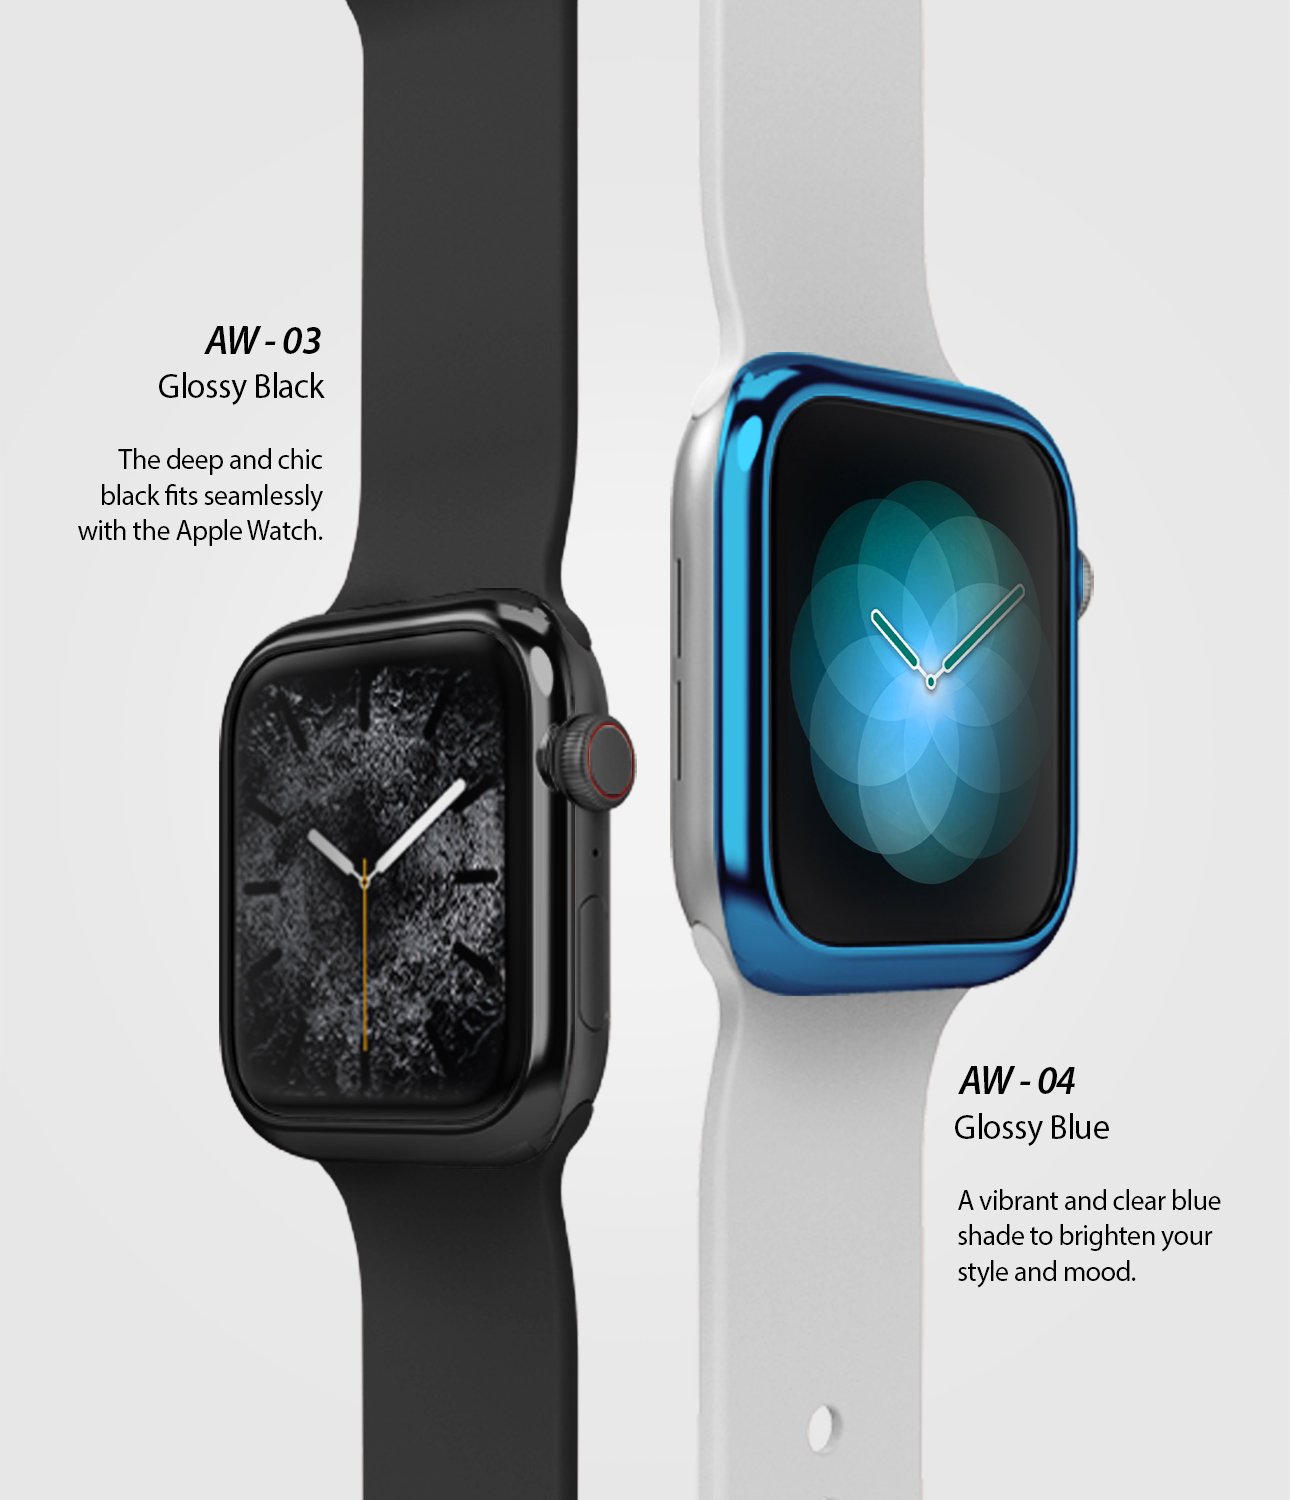 ringke bezel styling for apple watch series 6 / 5 / 4 / SE 40mm